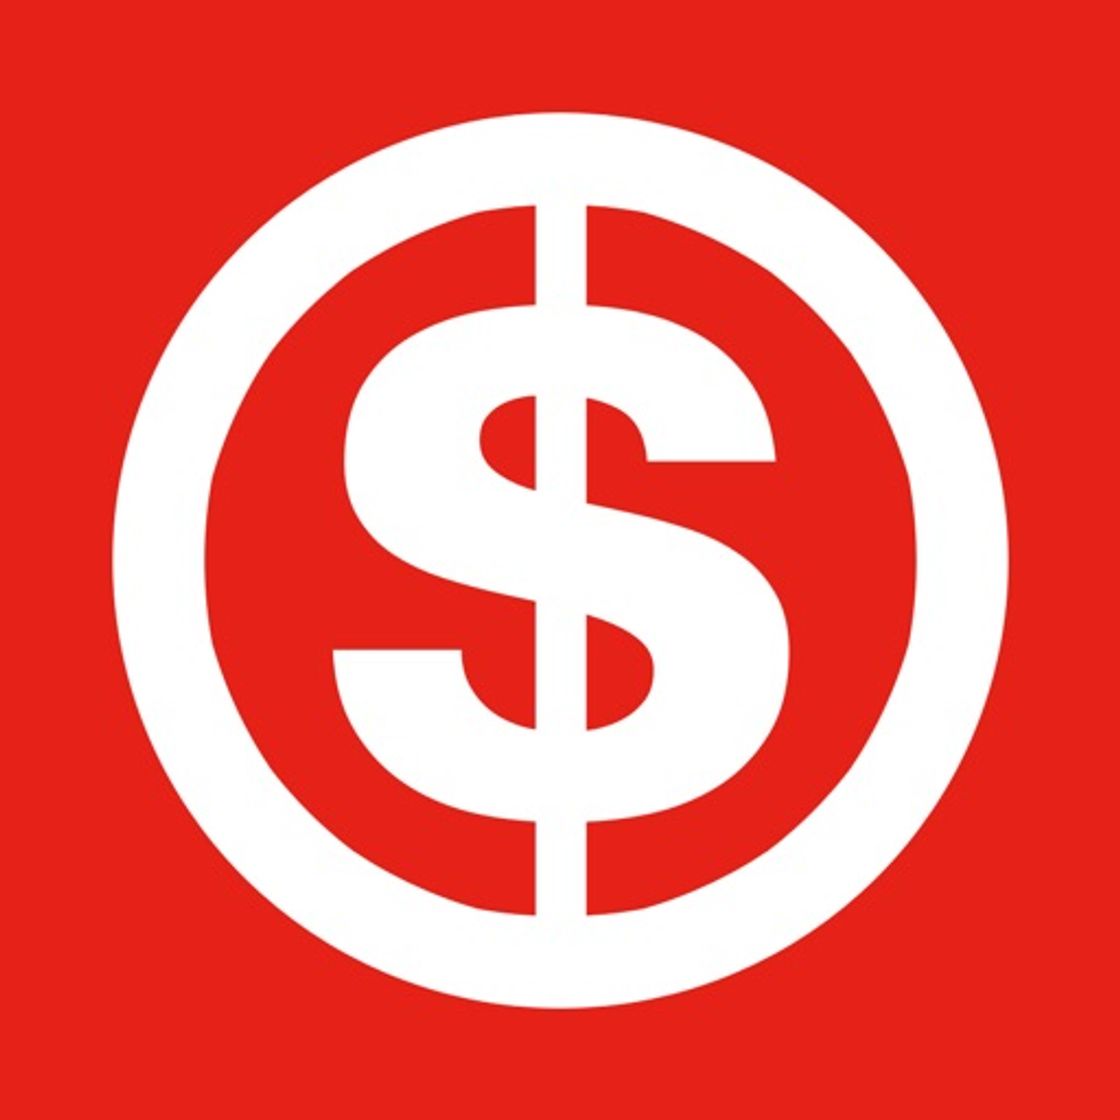 Money App – Cash & Rewards App